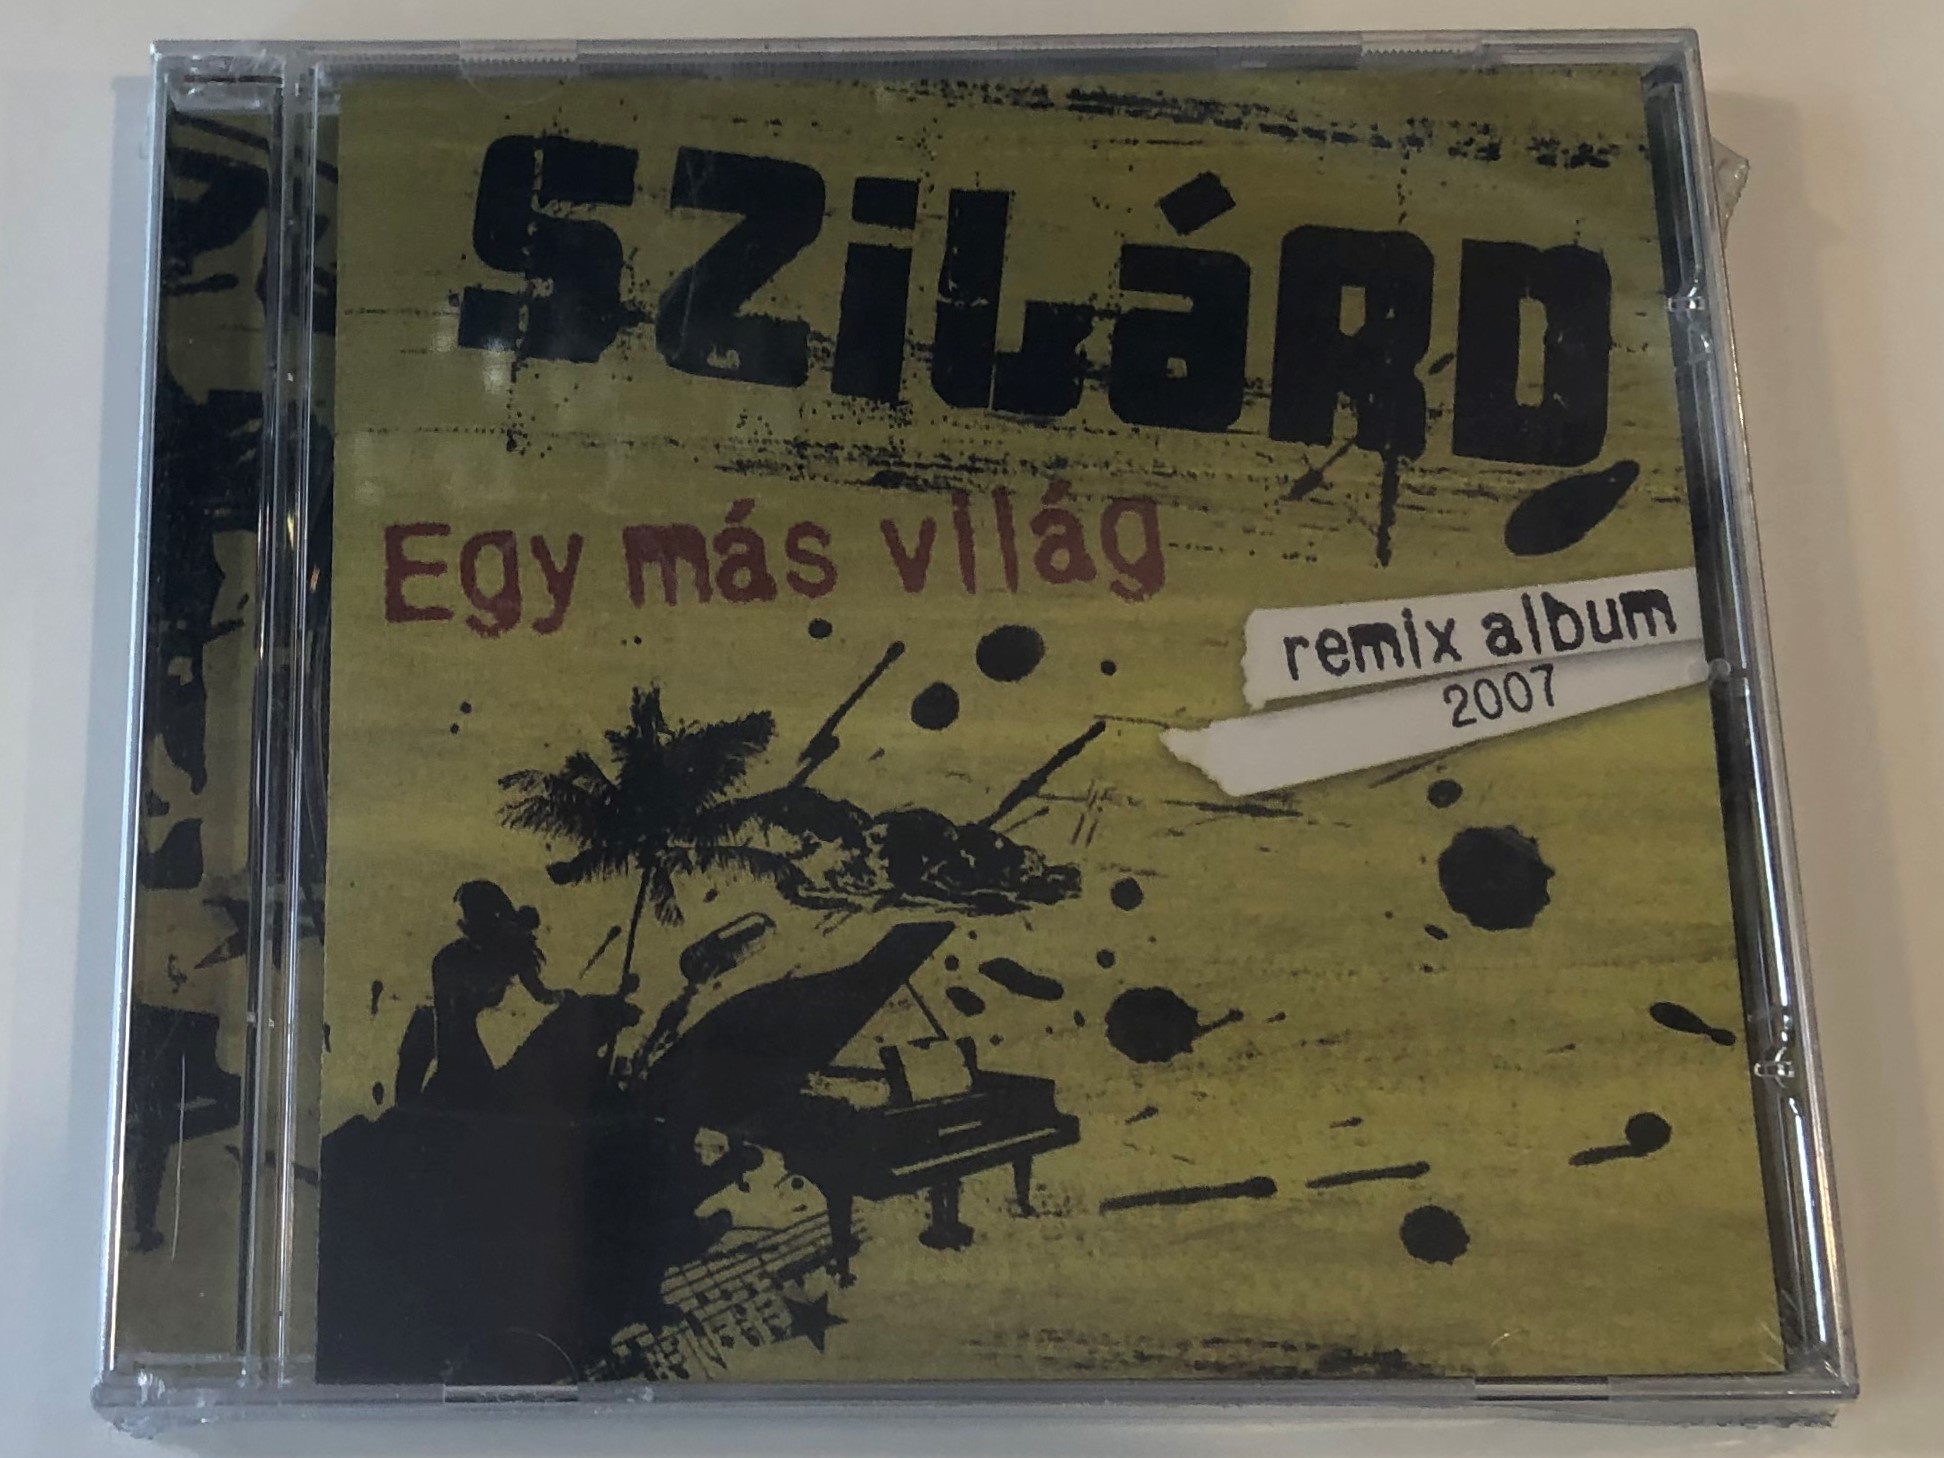 szil-rd-egy-m-s-vil-g-remix-album-2007-magneoton-audio-cd-2007-5144-24896-2-1-.jpg